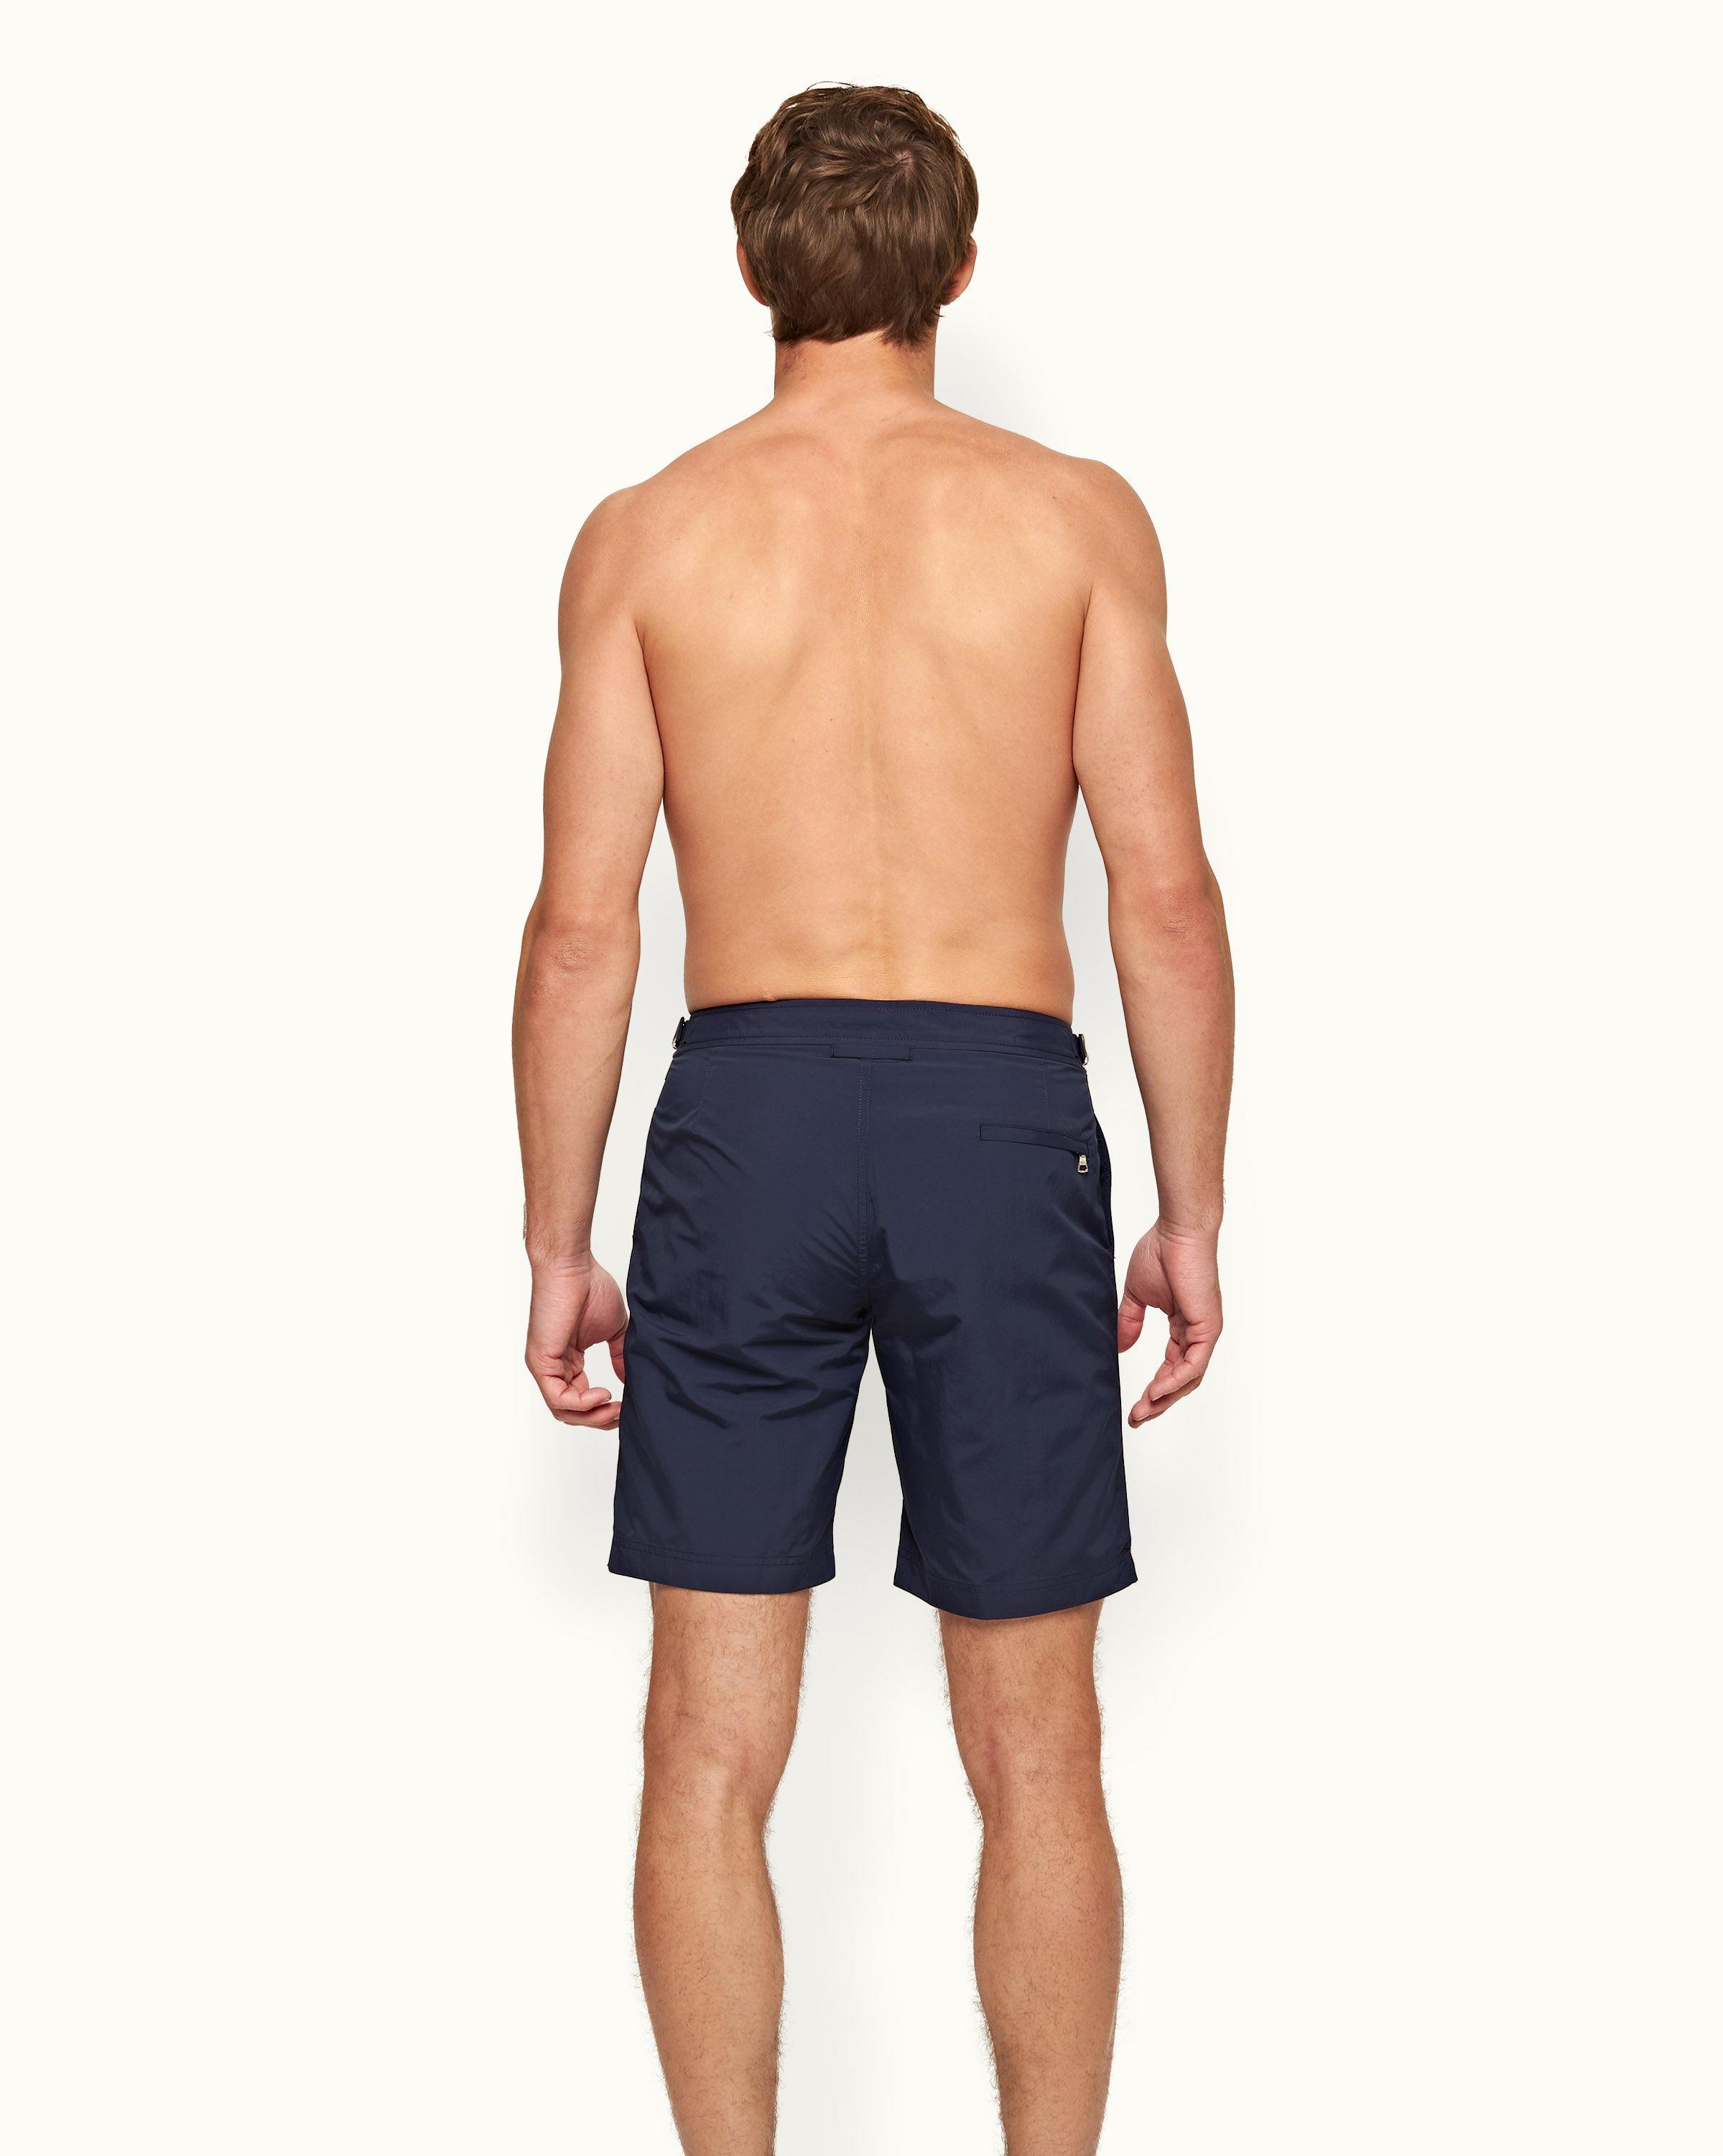 Quels sont les shorts de bain les plus stylés pour cet été ?